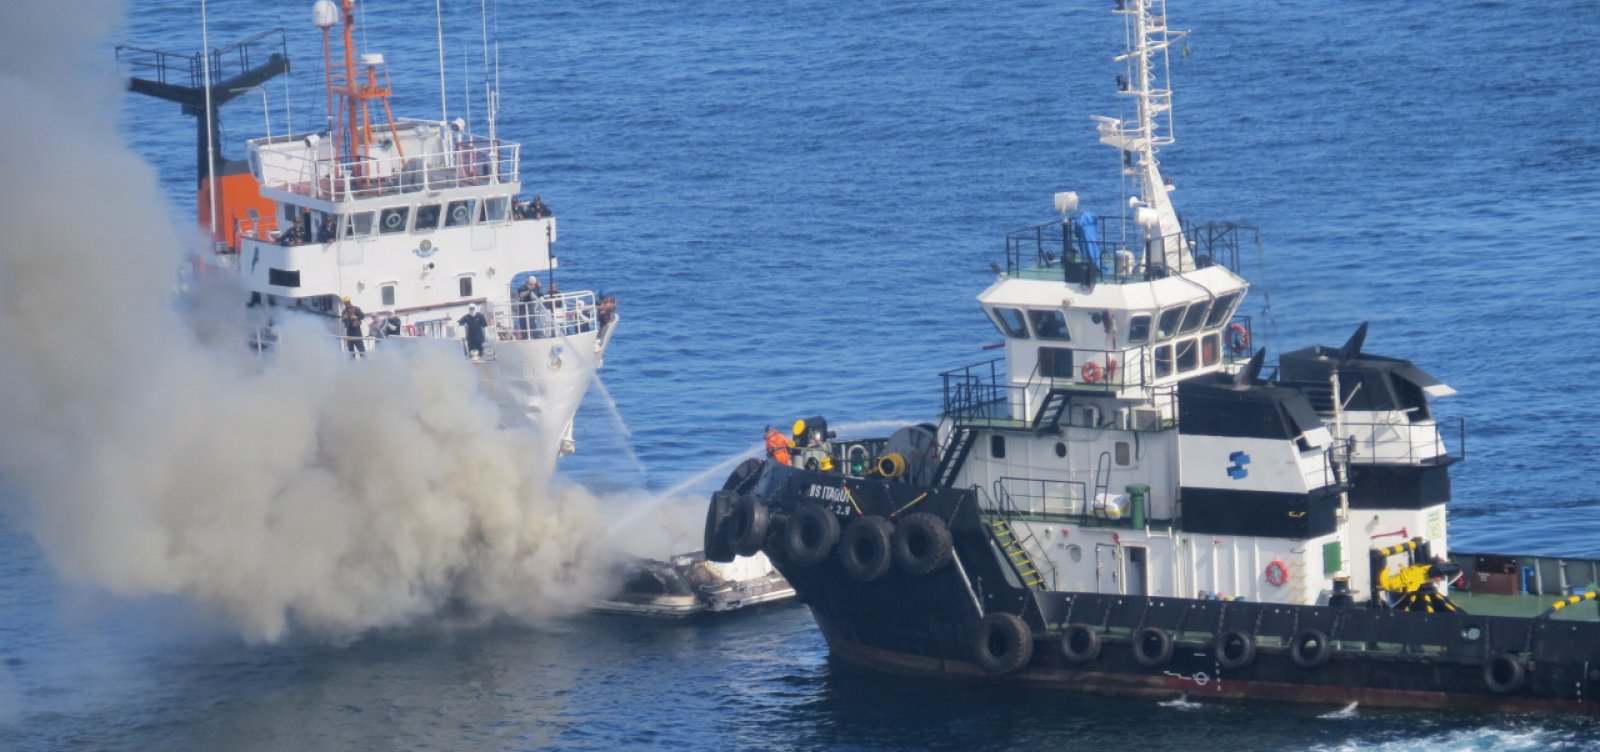 Incêndio em lancha está controlado e não deixa vítimas, diz Marinha